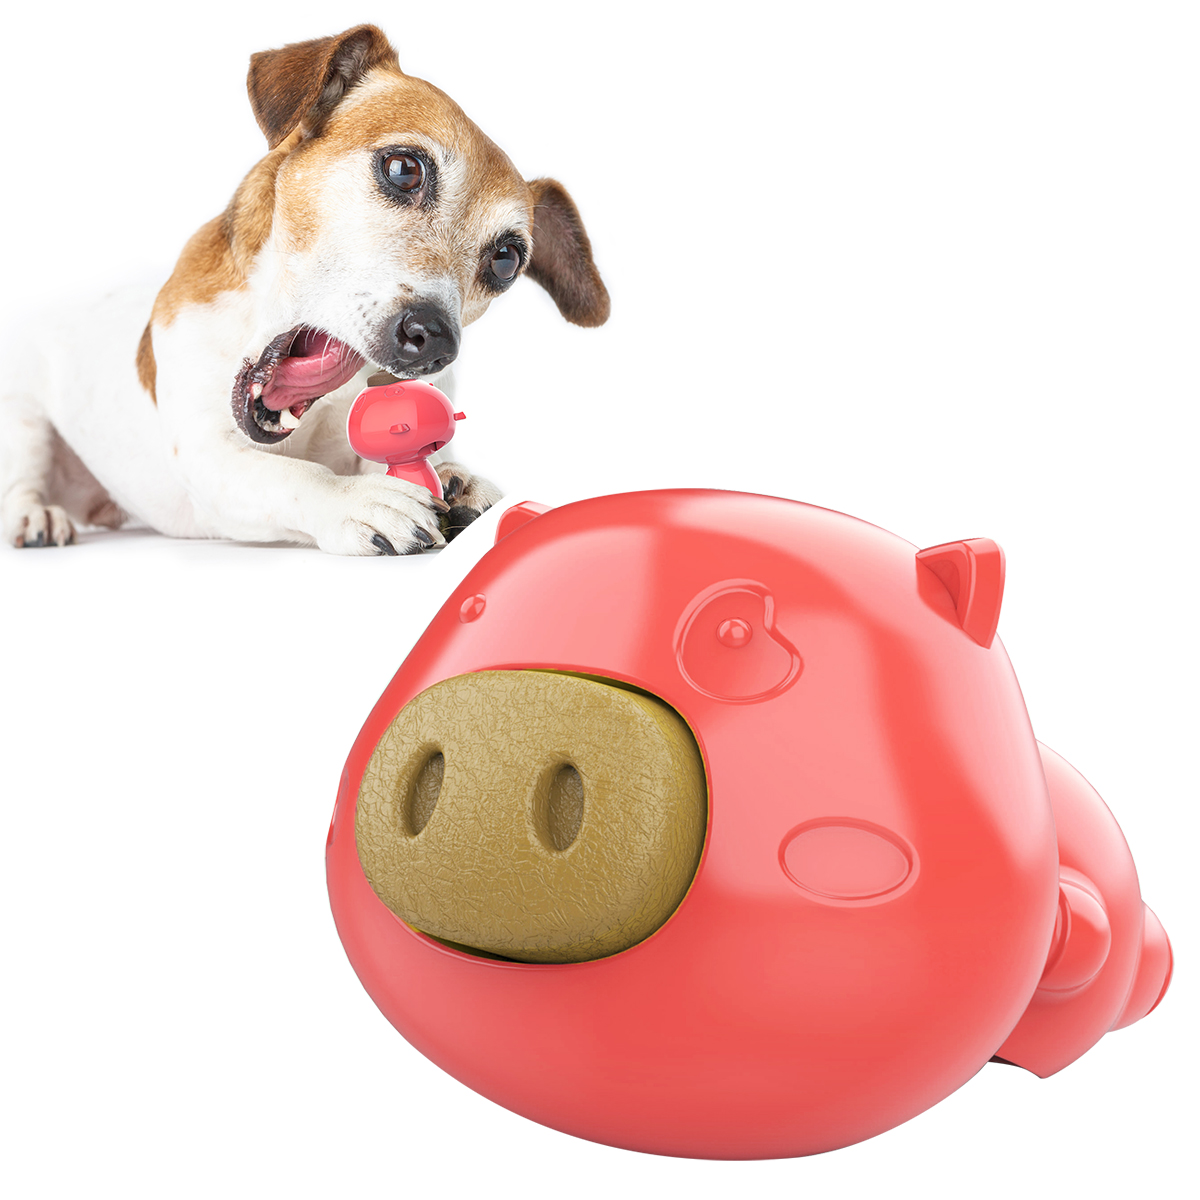 հայտնի շան ծամող խաղալիք ընտանի կենդանուն մատակարարում է խոզուկի ձևի խելոք բուժիչ մոլի ձողիկ Շան ծամող խաղալիք ատամի խոզանակ Կարմիր